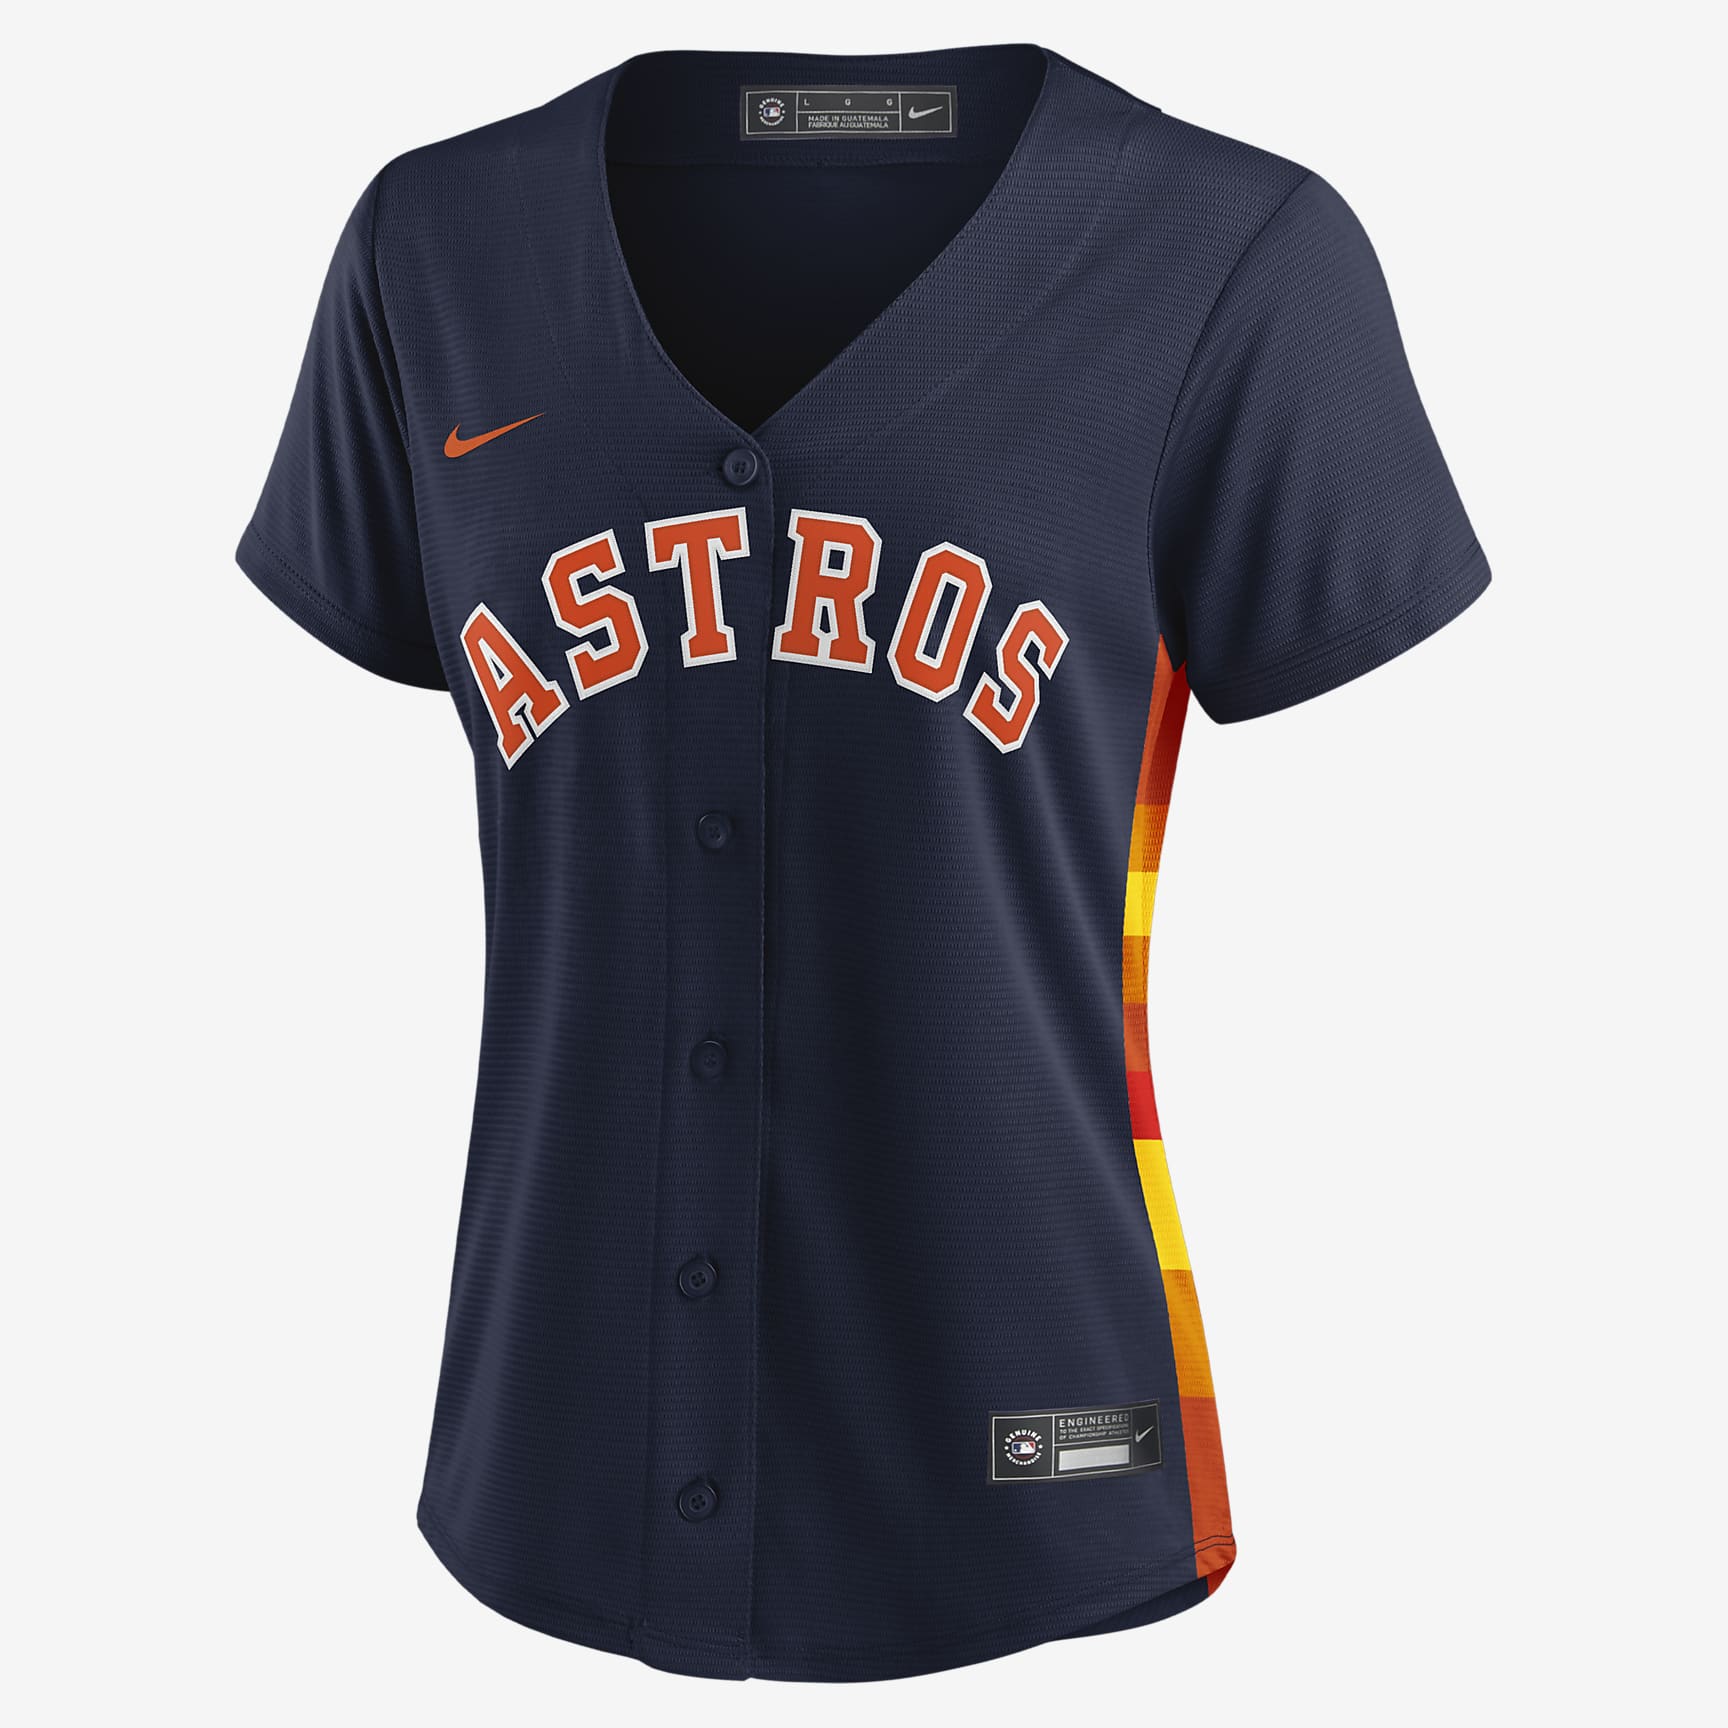 Jersey de béisbol Replica para mujer MLB Houston Astros. Nike.com